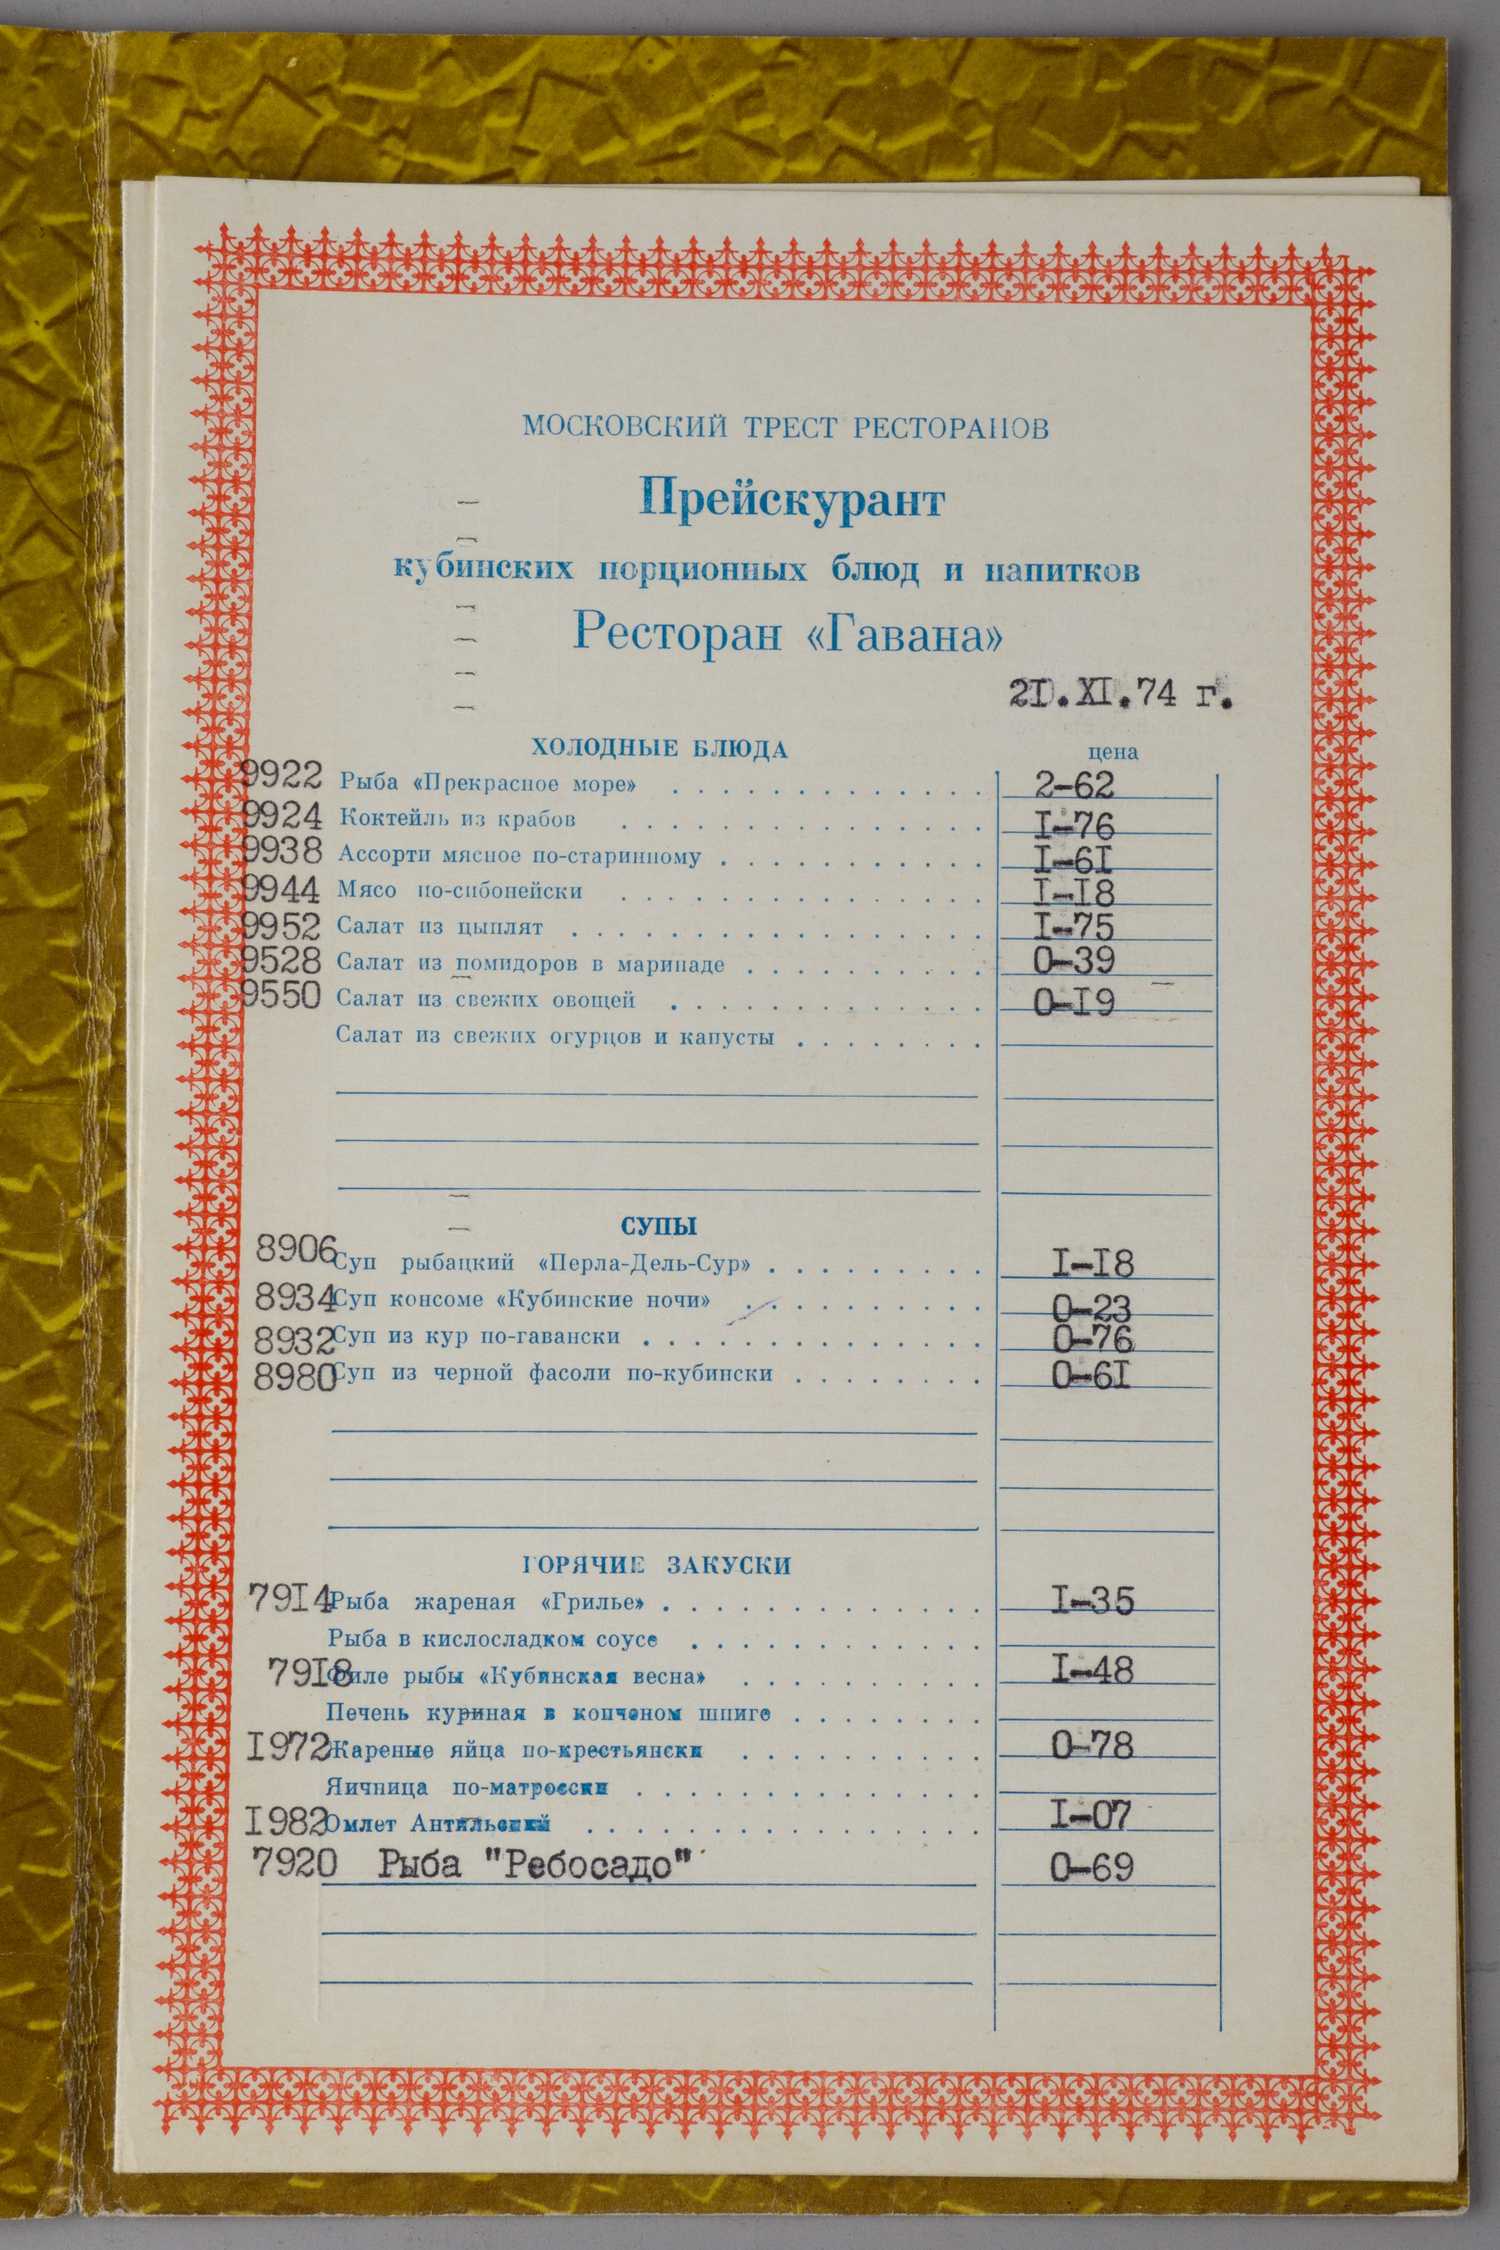 17 меню и прейскурантов советских кафе, баров и ресторанов. 1970-е - 1990-е годы.